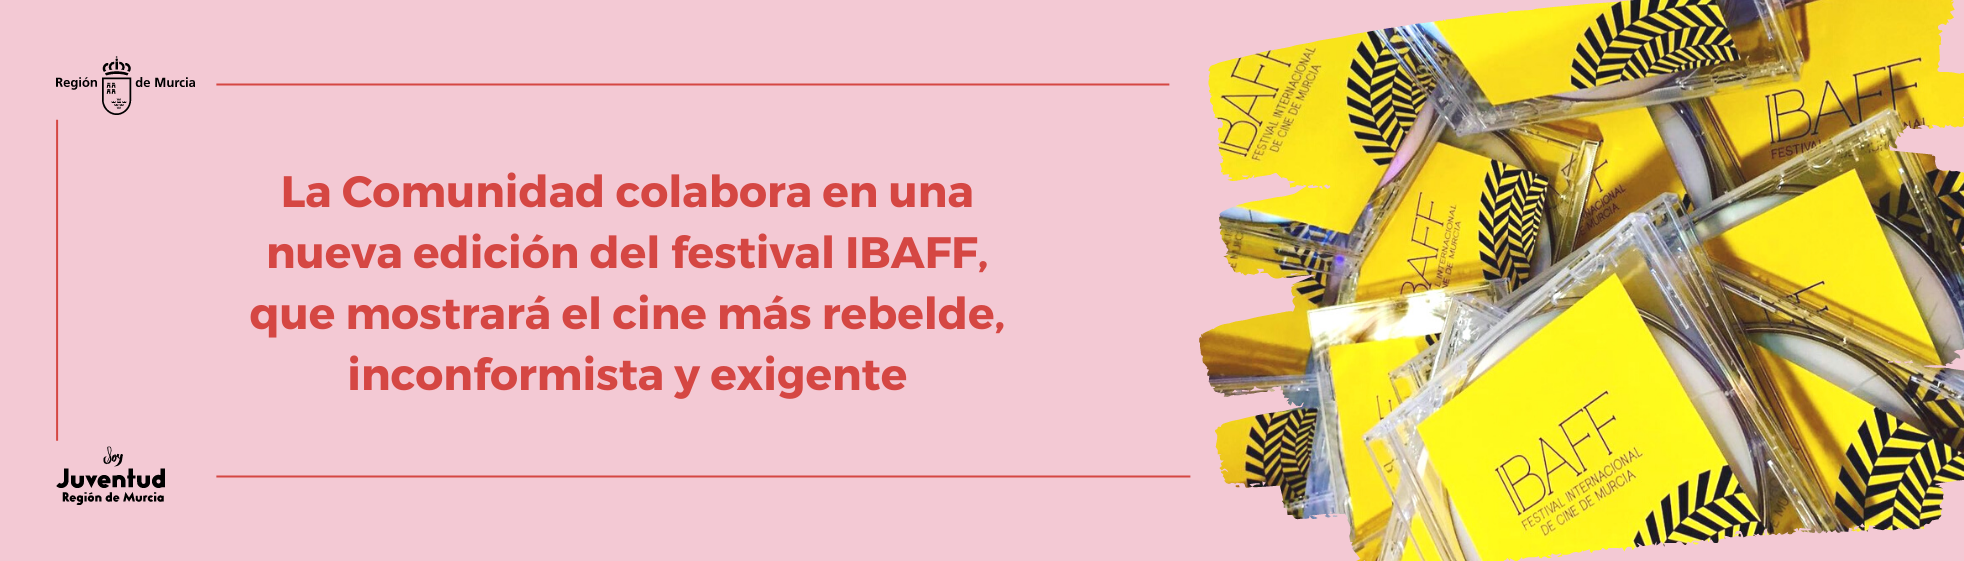 La Comunidad colabora en una nueva edición del festival IBAFF, que mostrará el cine más rebelde, inconformista y exigente